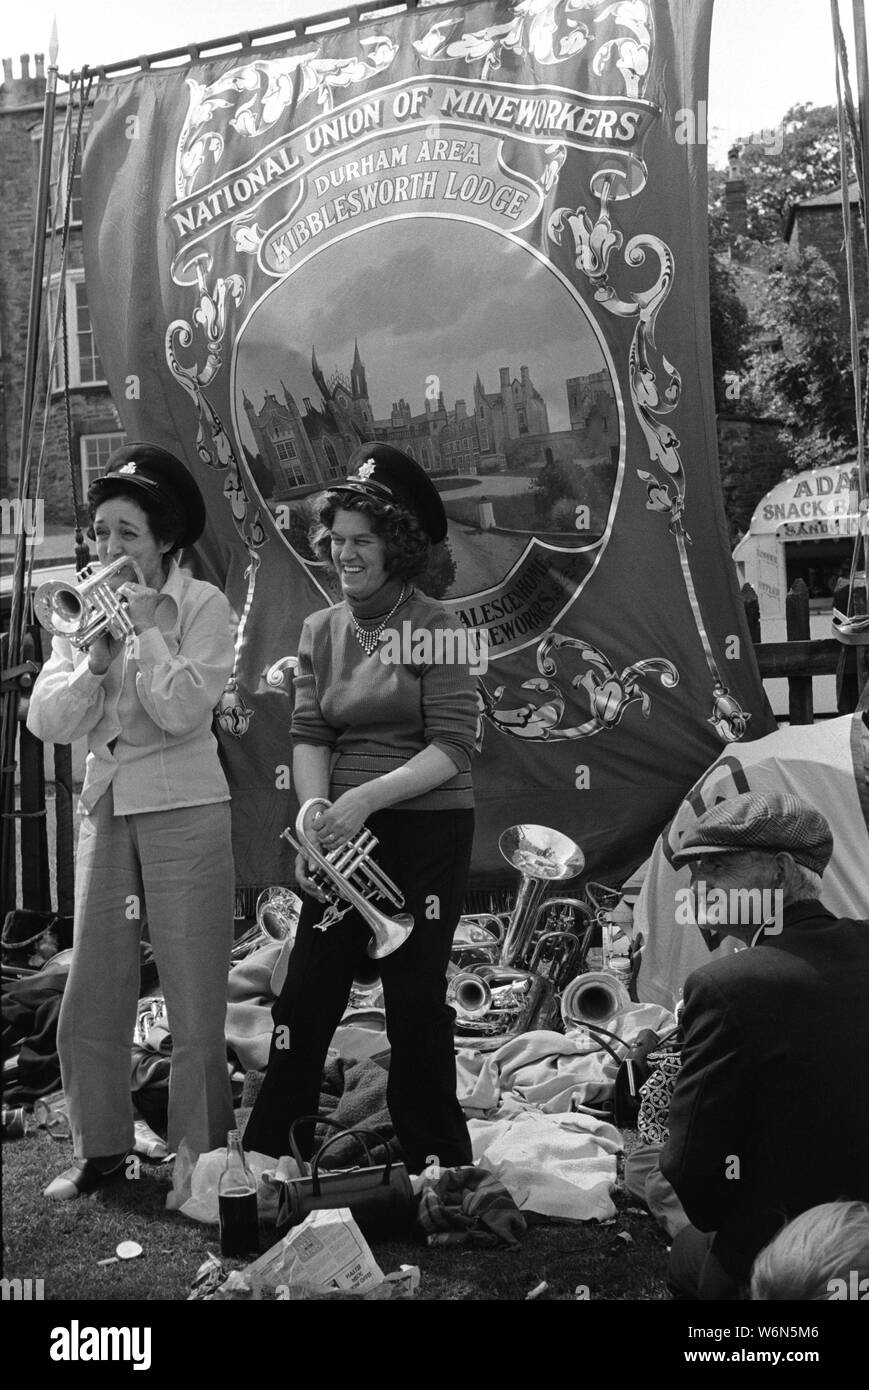 Durham Miners Gala. Zwei Kohlebergarbeiterfrauen haben Spaß und spielen auf den silbernen Bands der Zeche unter der National Union of Mineworkers, Durham Area Kibblesworth Lodge Banner 70s County Durham, England UK 1970s HOMER SYKES Stockfoto